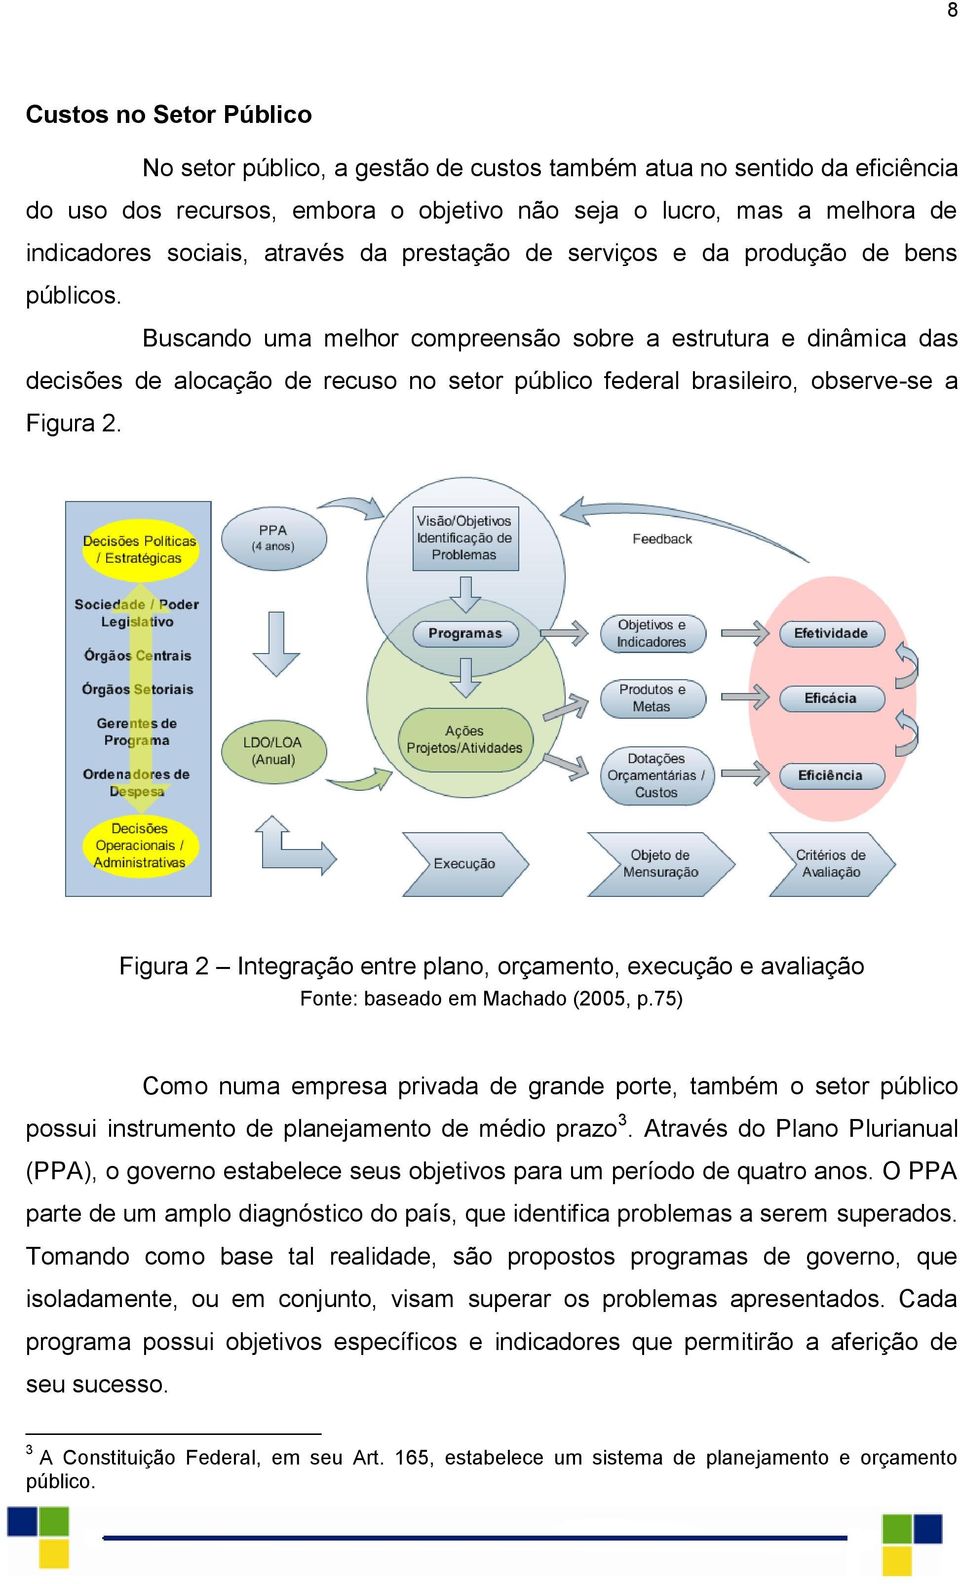 Buscando uma melhor compreensão sobre a estrutura e dinâmica das decisões de alocação de recuso no setor público federal brasileiro, observe-se a Figura 2.